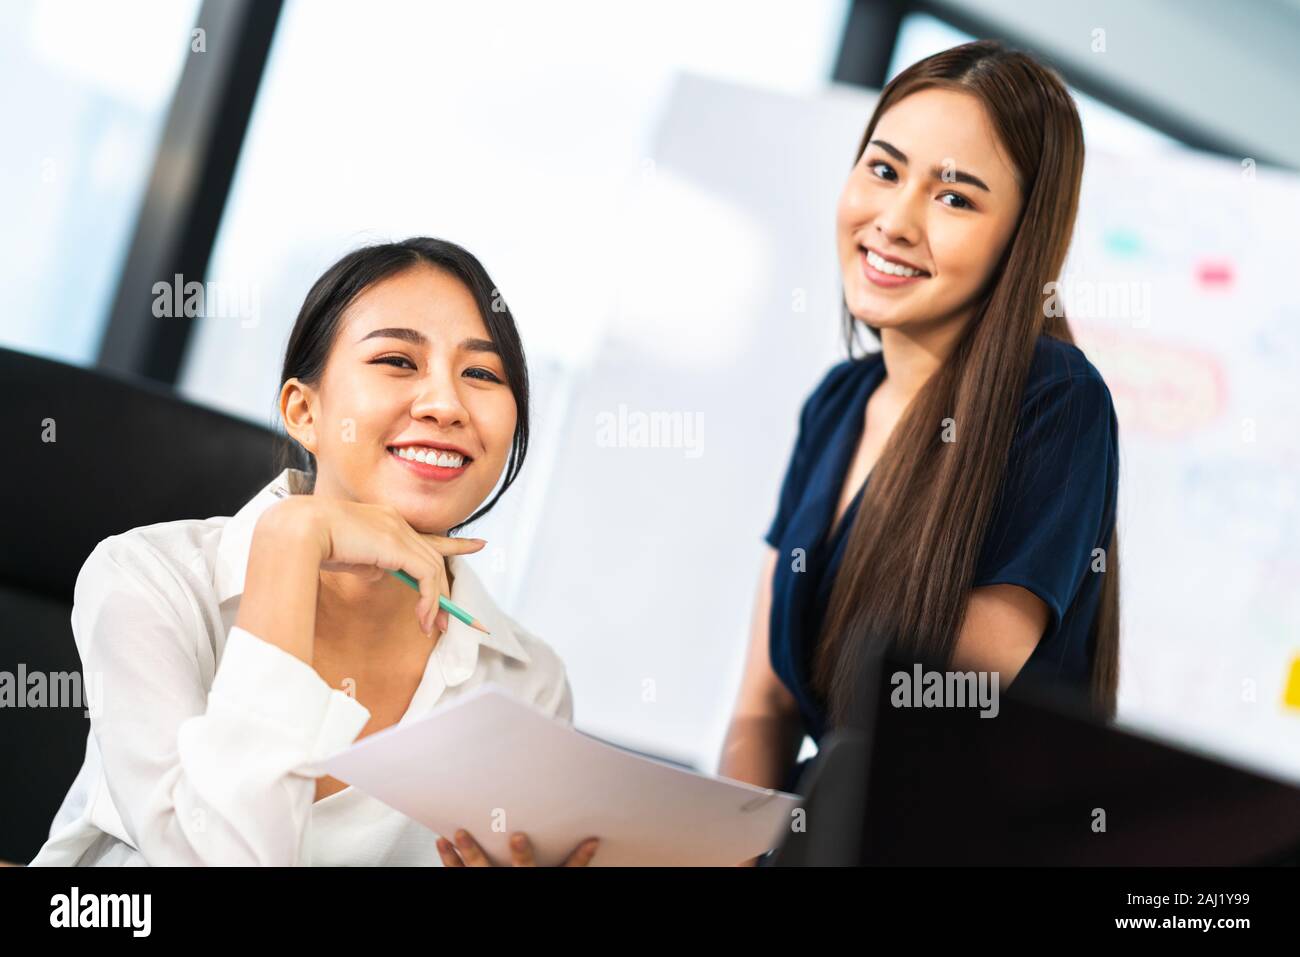 Ritratto di due bei colleghi di ufficio asiatici che sorridono insieme al lavoro. Colleghi di lavoro, partner di lavoro di squadra, consulente di lavoro o donna di lavoro Foto Stock